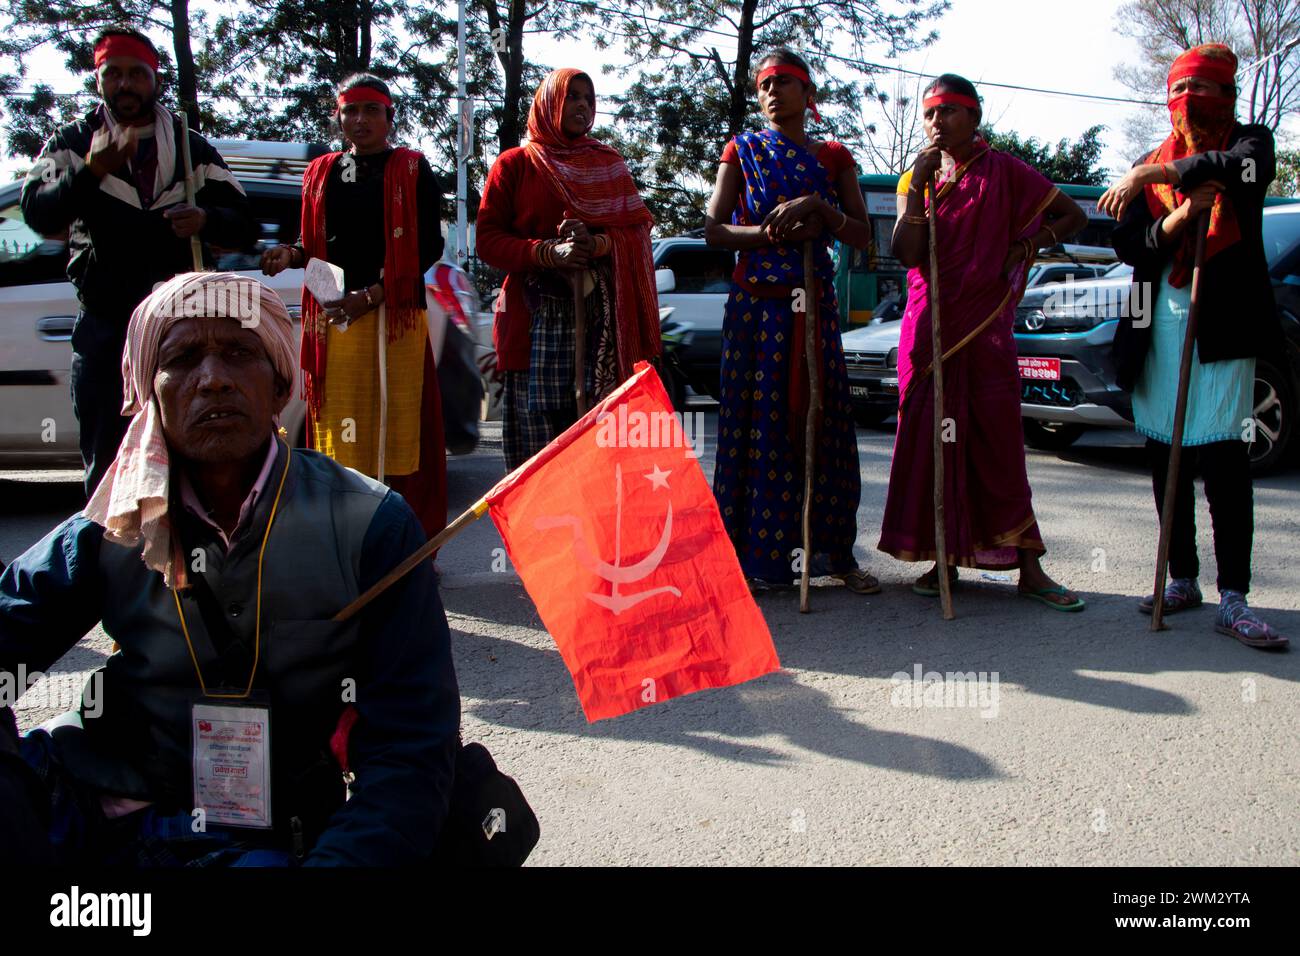 Am 23. Februar 2024 in Kathmandu, Nepal. Die Opfer von Kredithaien protestieren auf halbem Weg, während sie während eines protestmarsches in Richtung des Regierungsbüros in der Hauptstadt marschieren und die sechs-Punkte-Vereinbarung, einschließlich der Lösung des Problems, fordern, ein wahrheitsgetreues Gesetz mit einem Pokergesicht zu verabschieden. Opfer von Leihhaien aus der ganzen Nation, einschließlich West Mahakali und Ost-Mechi, kamen in der Hauptstadt an, nachdem sie 23 Tage lang 1171 Kilometer auf verschiedenen Routen gelaufen waren. Kredithaie haben Opfern ungerechtfertigte Systeme hoher Zins- oder Belastungssätze angeklagt, wie die Opfer erwähnten. (Foto von Abh Stockfoto